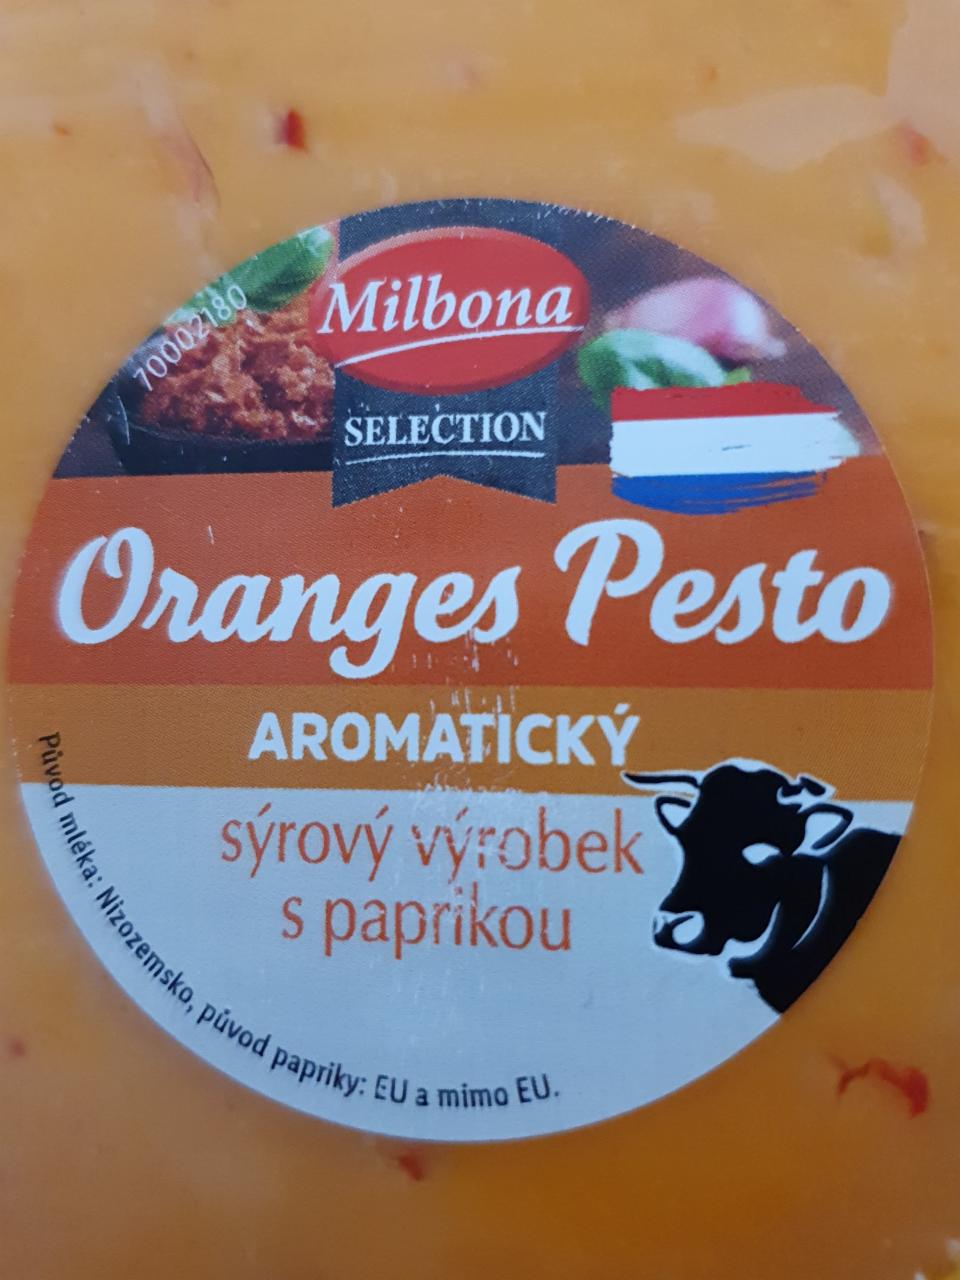 Fotografie - Oranges Pesto aromatický sýrový výrobek s paprikou Milbona